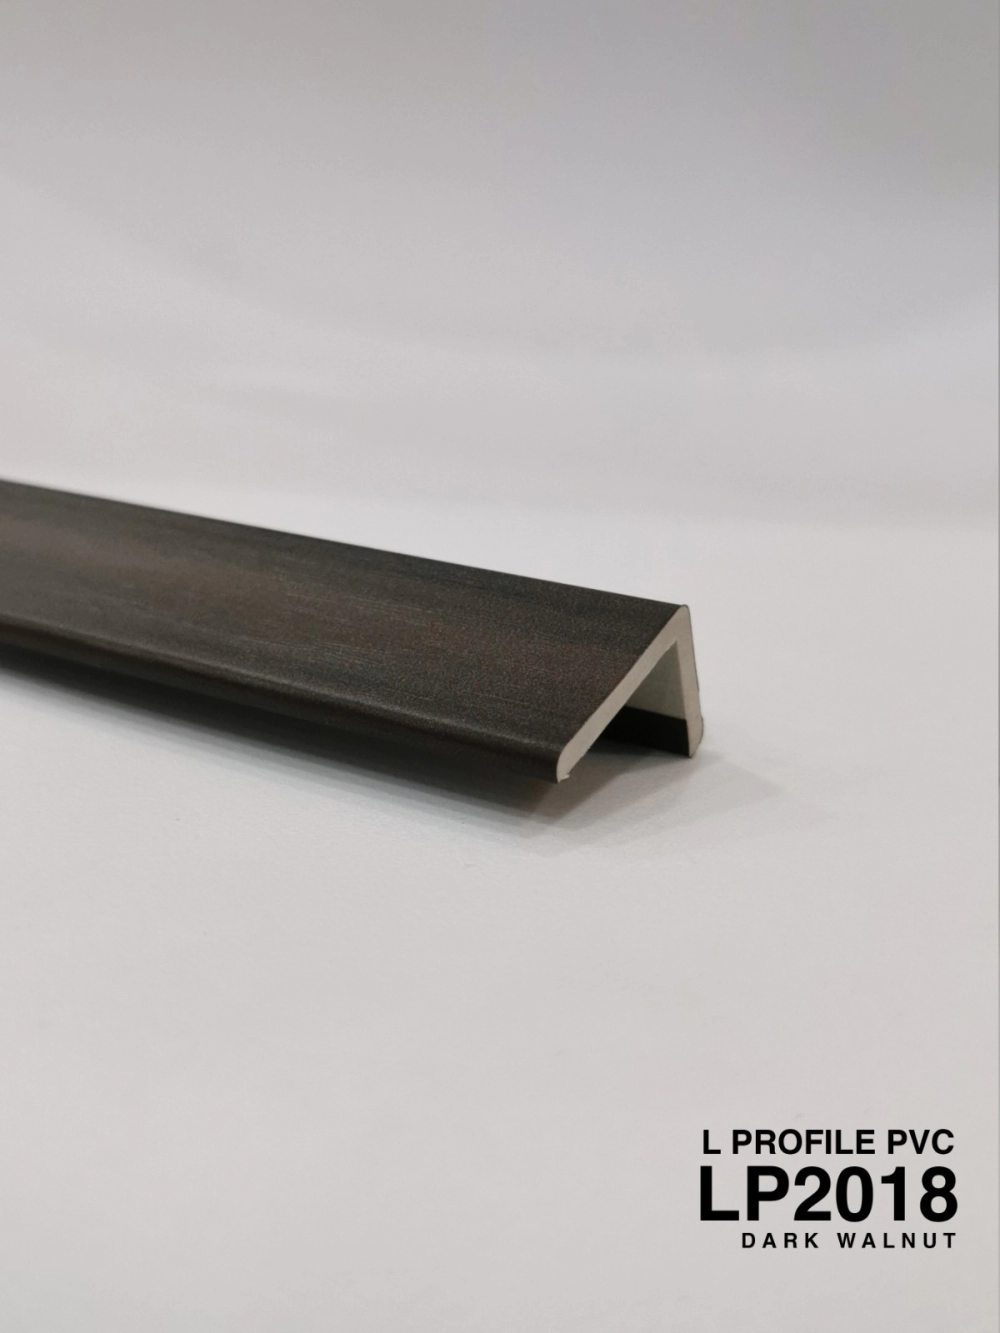 L PROFILE PVC DARK WALNUT LP2018